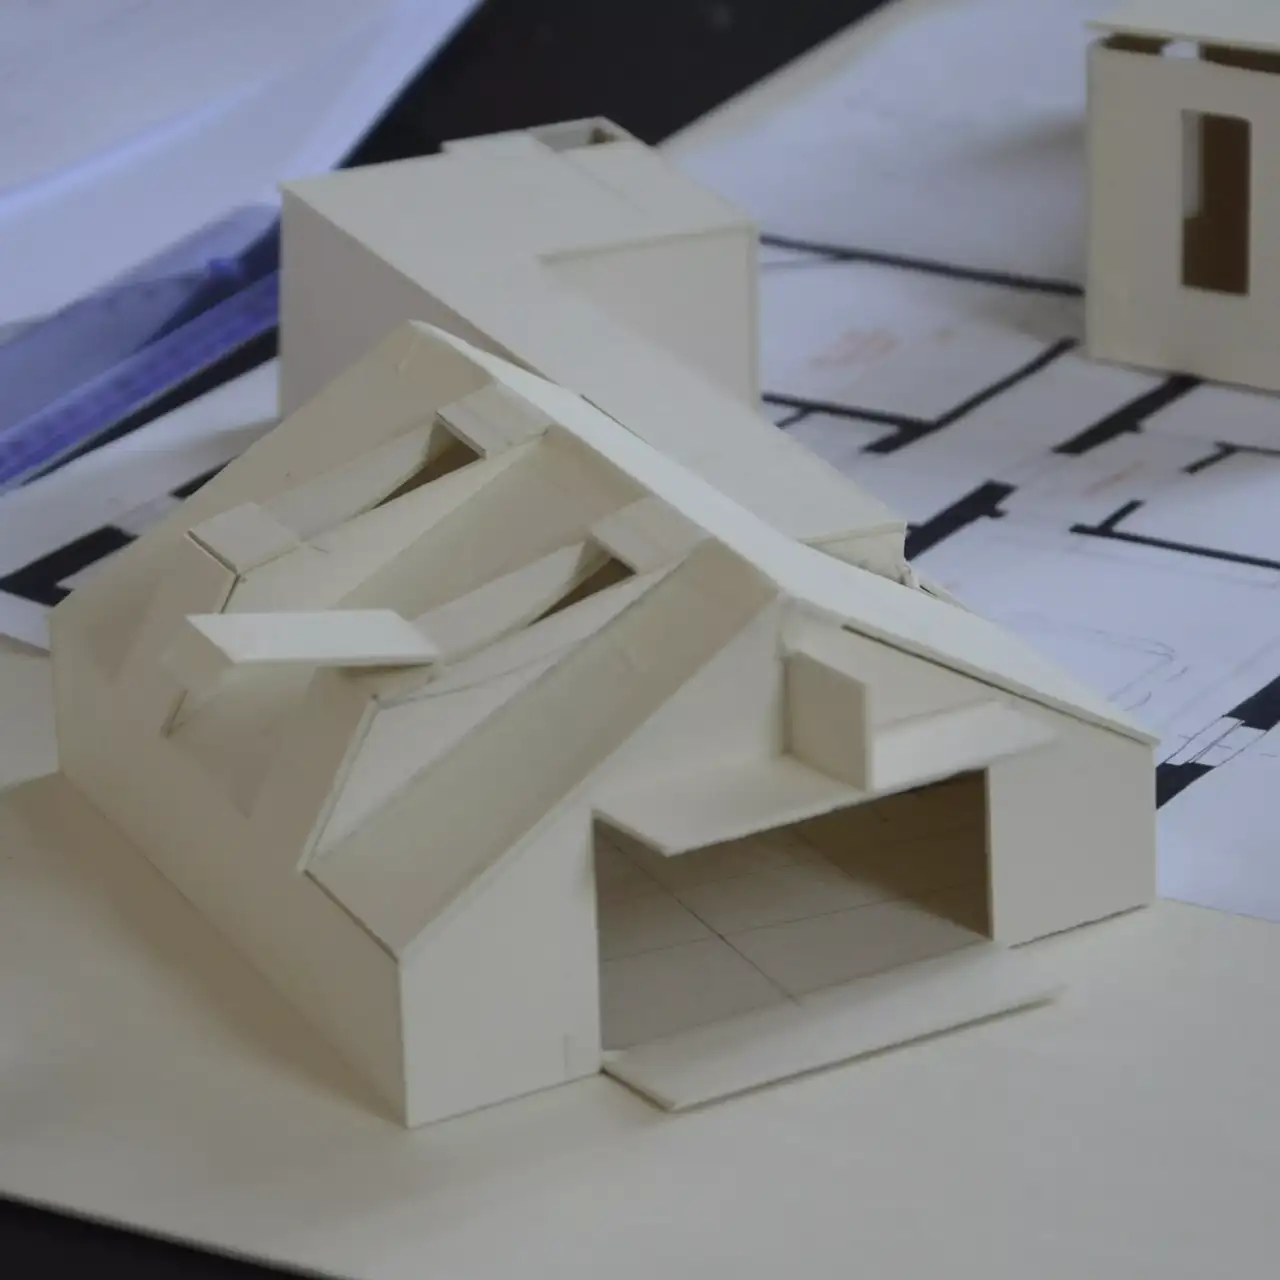 Architekturmodell eines modernen Gebäudes mit Entwurfsplänen im Hintergrund.